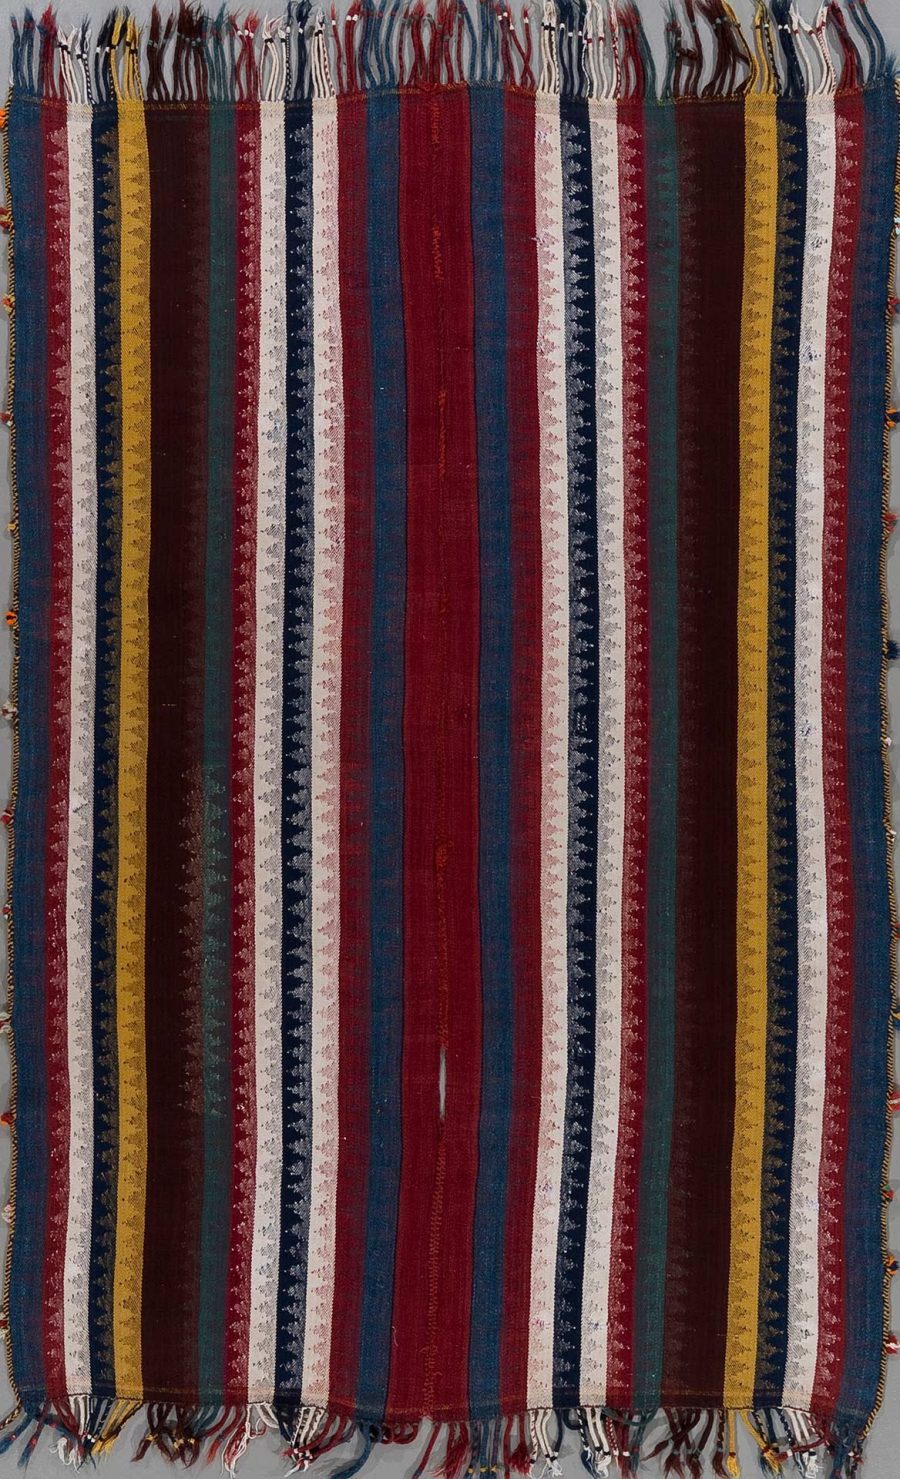 Handgewebter Teppich mit vertikalen Streifen in verschiedenen Farben wie Rot, Blau, Gelb und Grün sowie eingearbeiteten Mustern, hängend mit Fransen an beiden Enden.